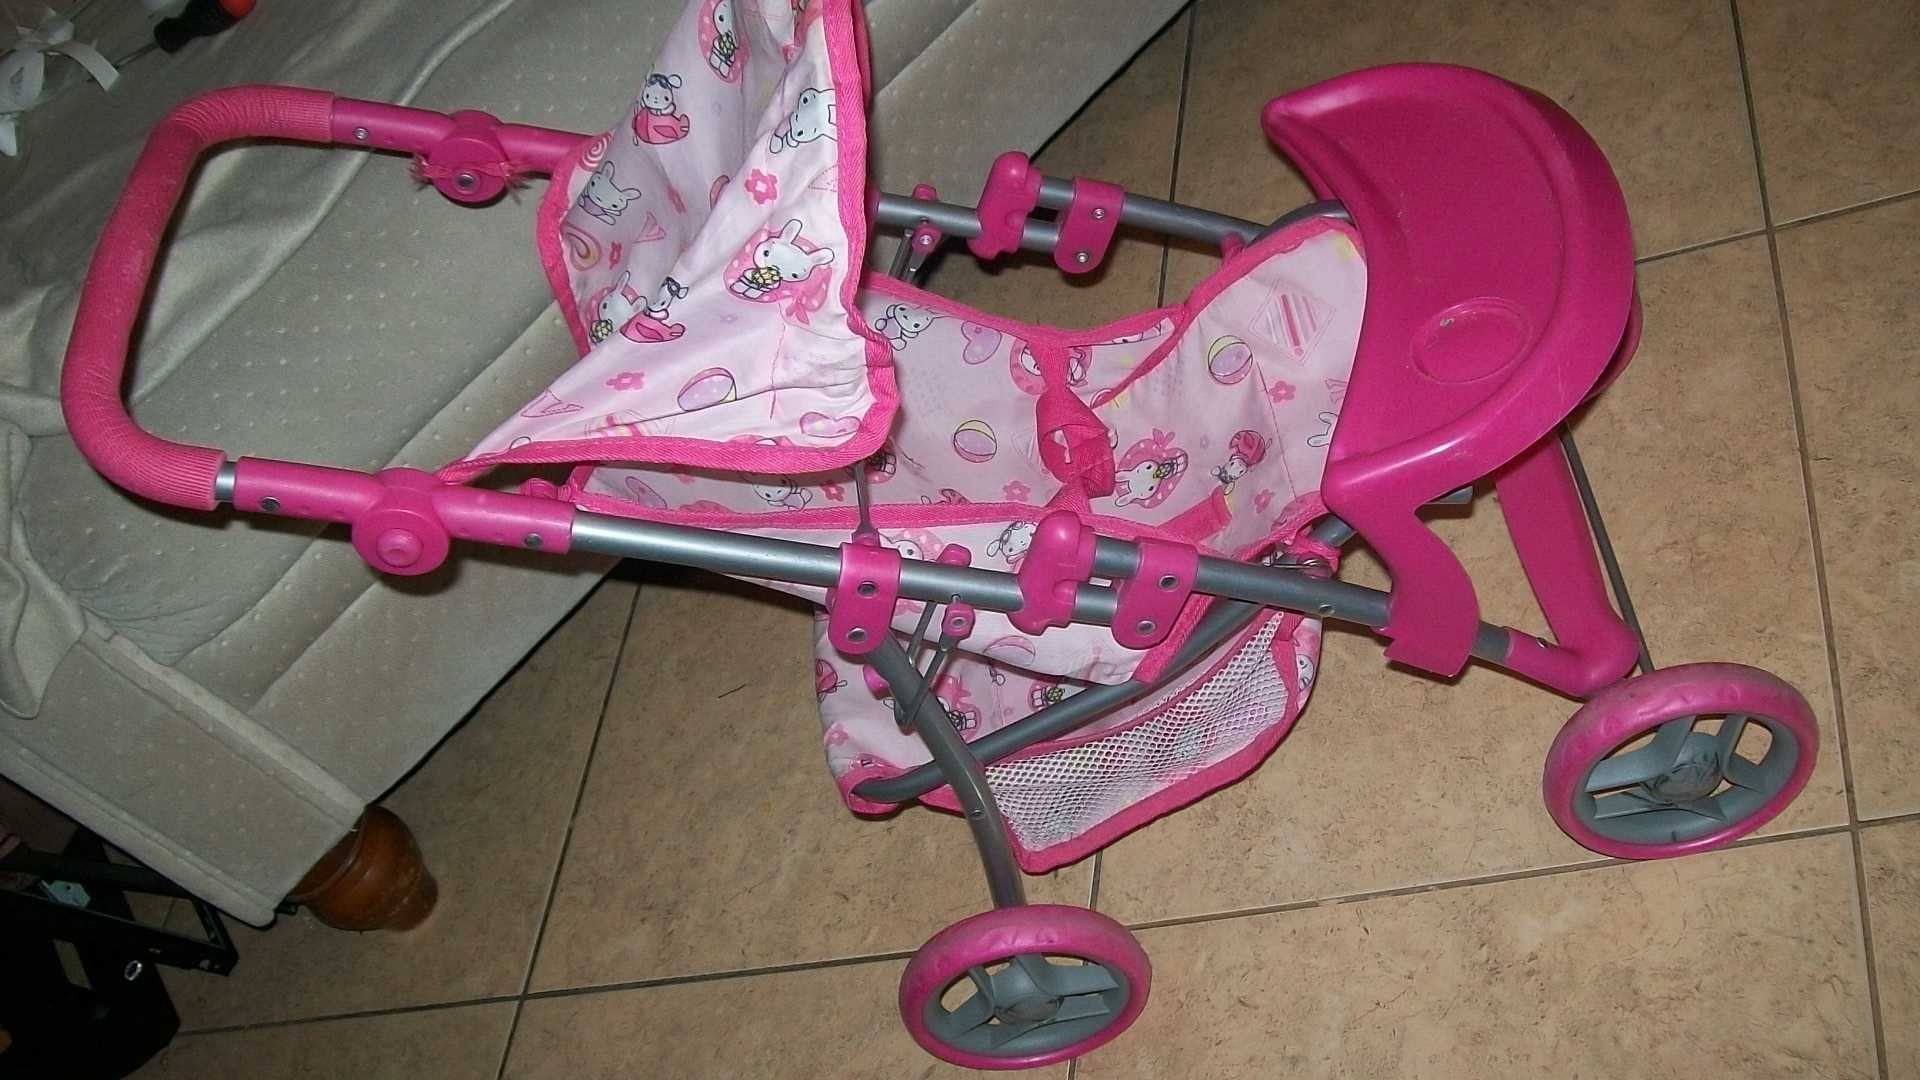 wózek dla lalki i inne wózki spacerówki takze dla dzieci